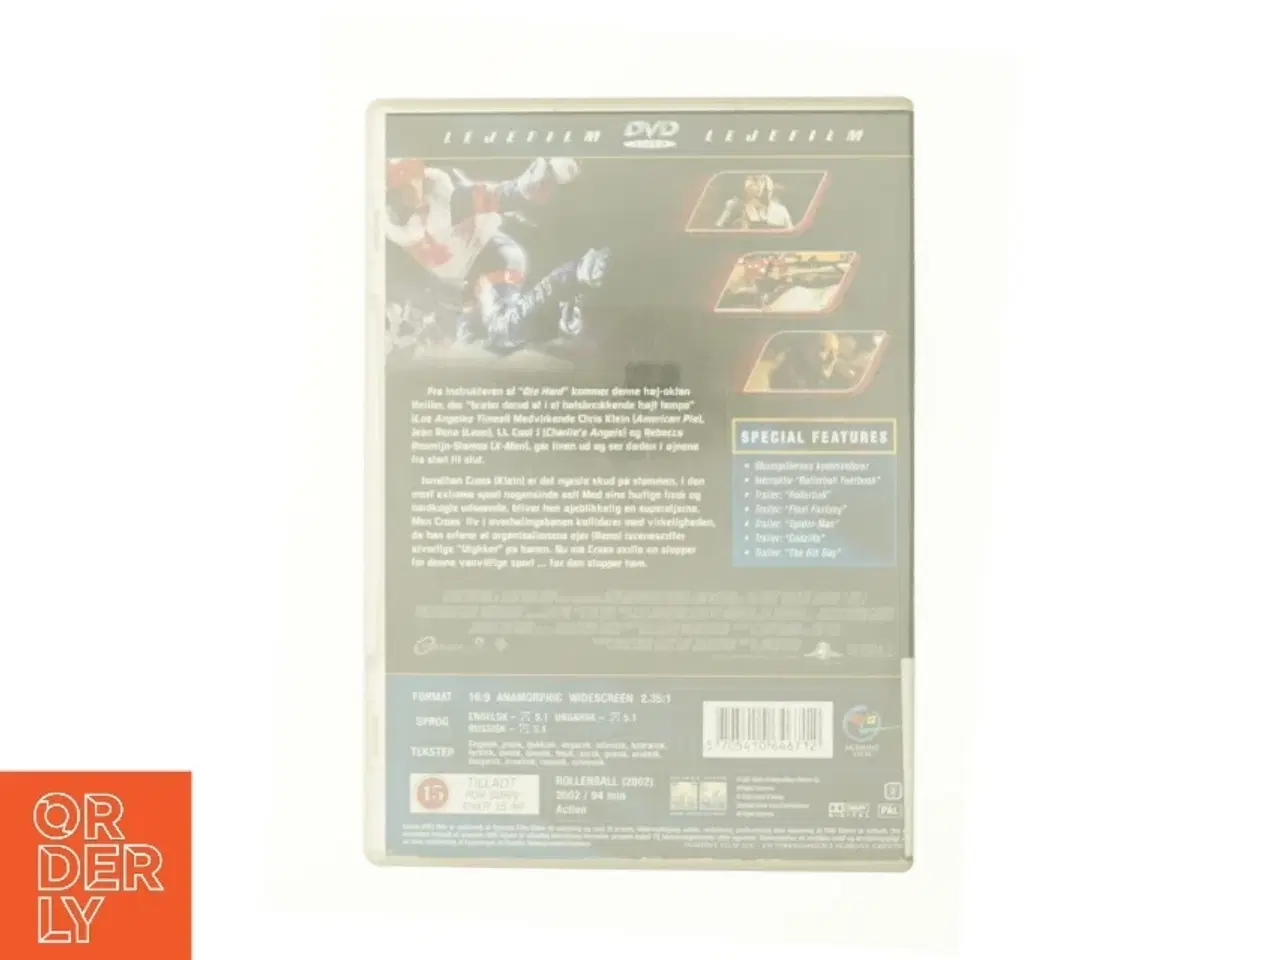 Billede 2 - Rollerball fra DVD